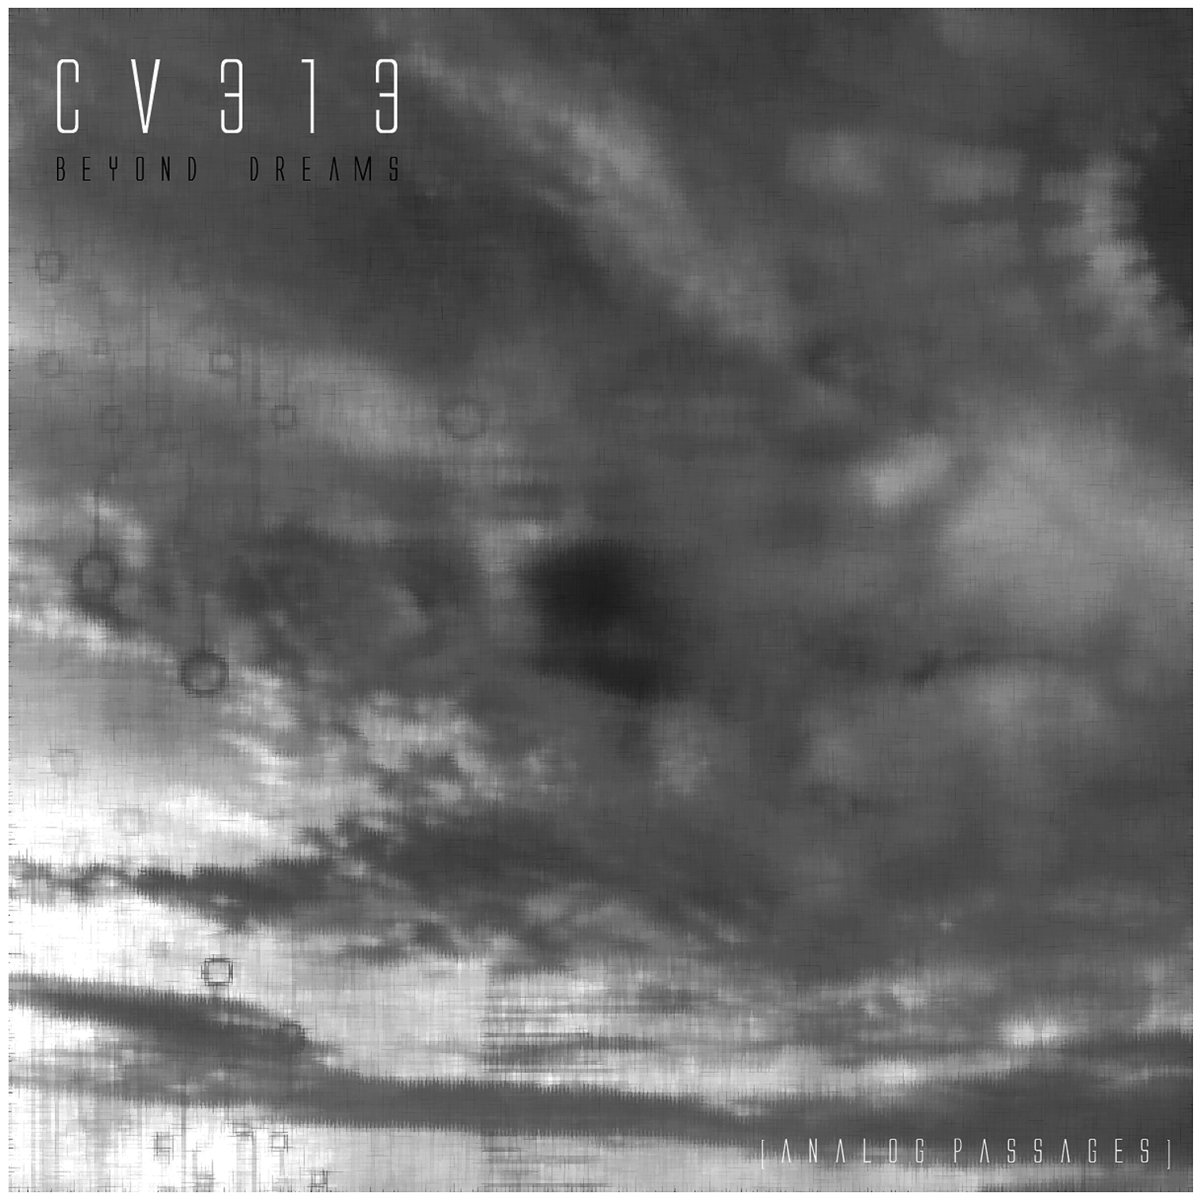 image cover: cv313 - Beyond Dreams [Analog Passages] / echospace [detroit]